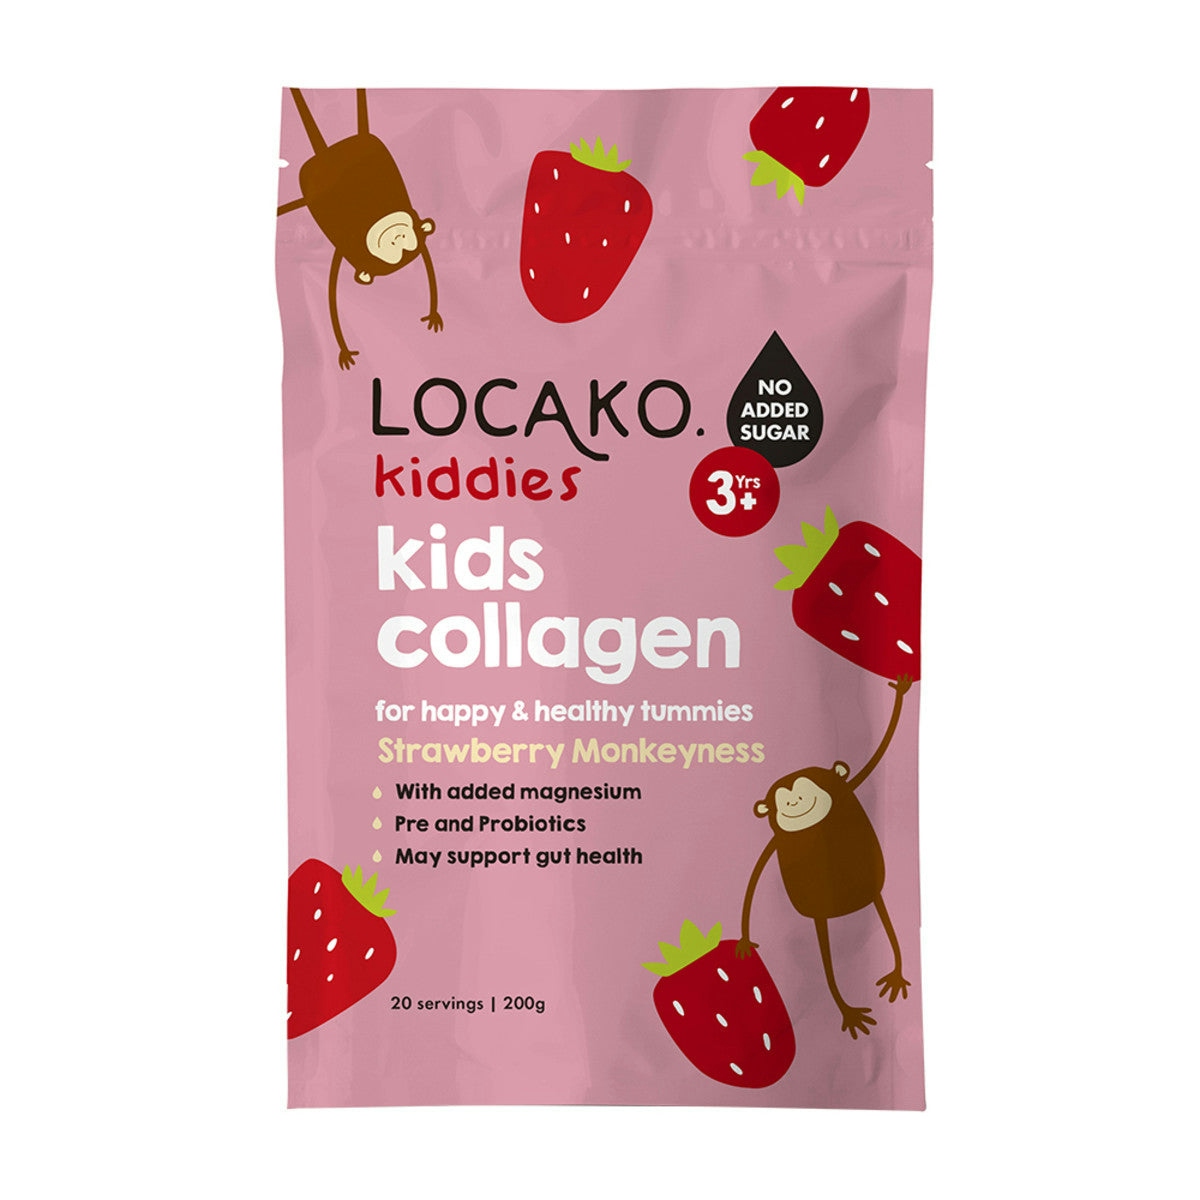 image of Locako Kiddies Kids Collagen Strawberries Monkeyness 200g on white background 